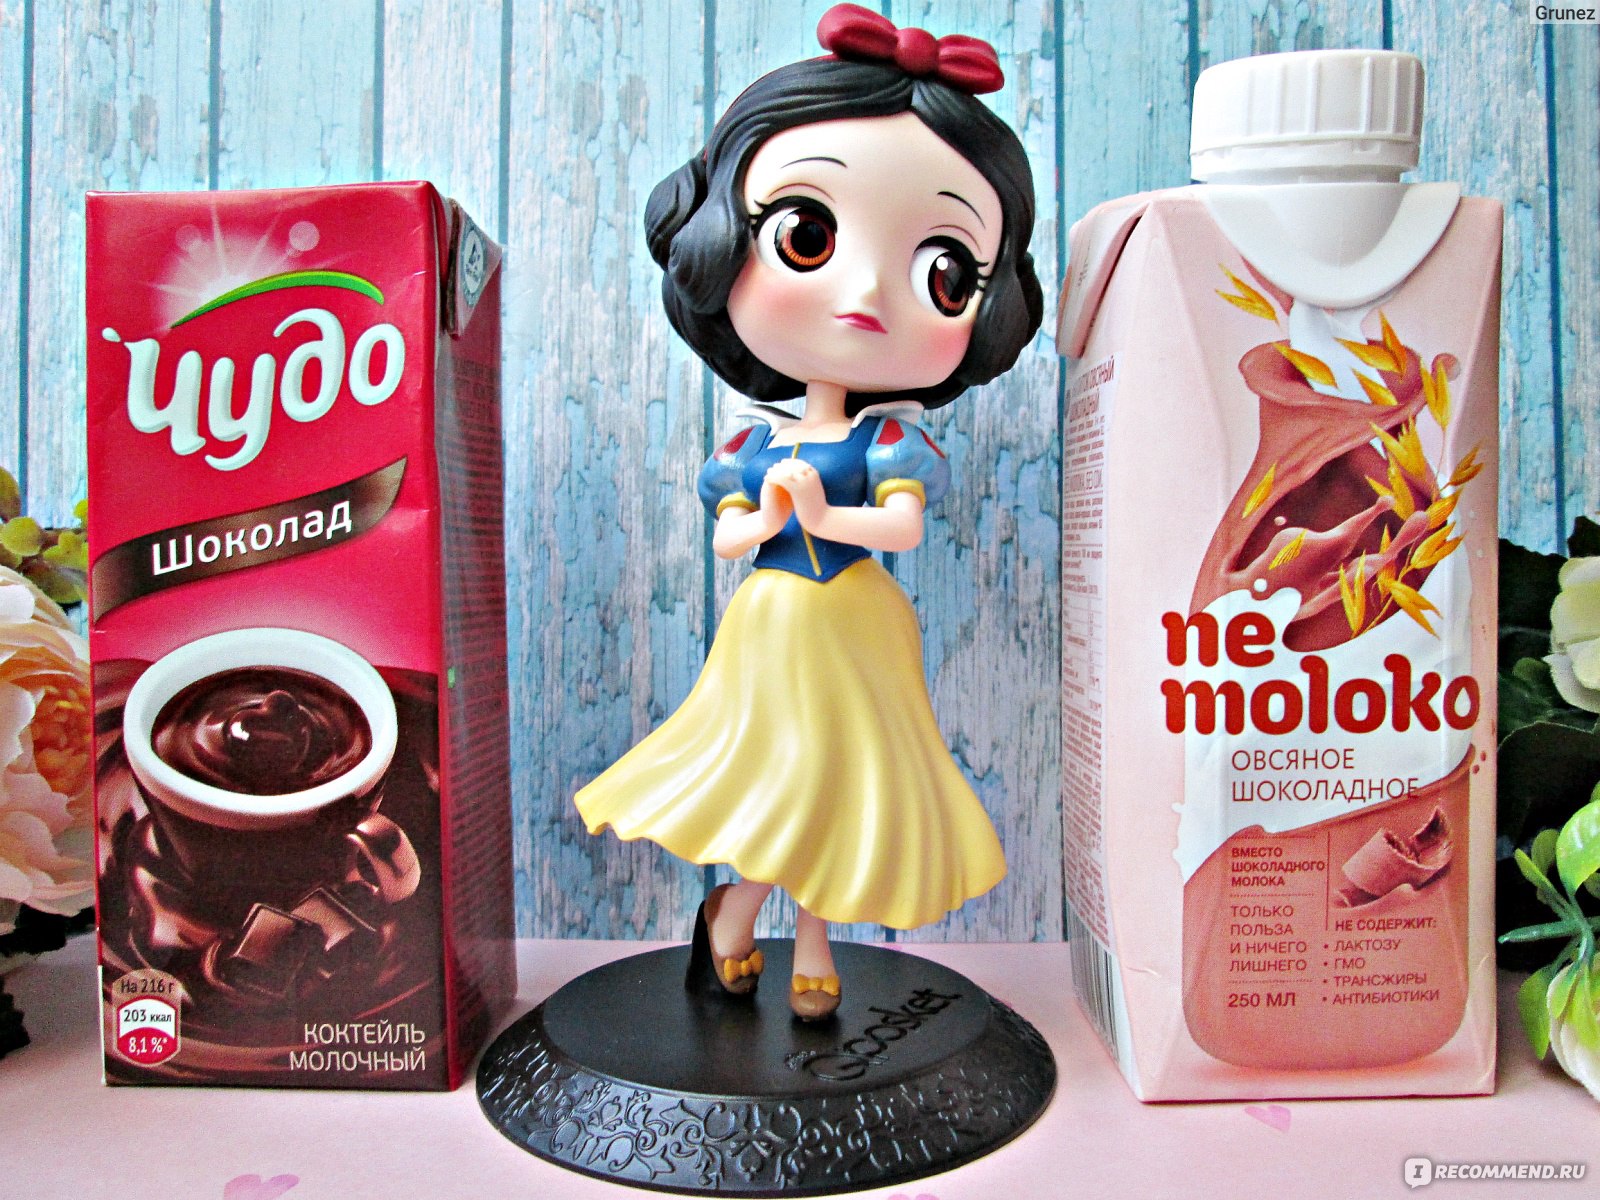 Напиток Nemoloko овсяное шоколадное фото